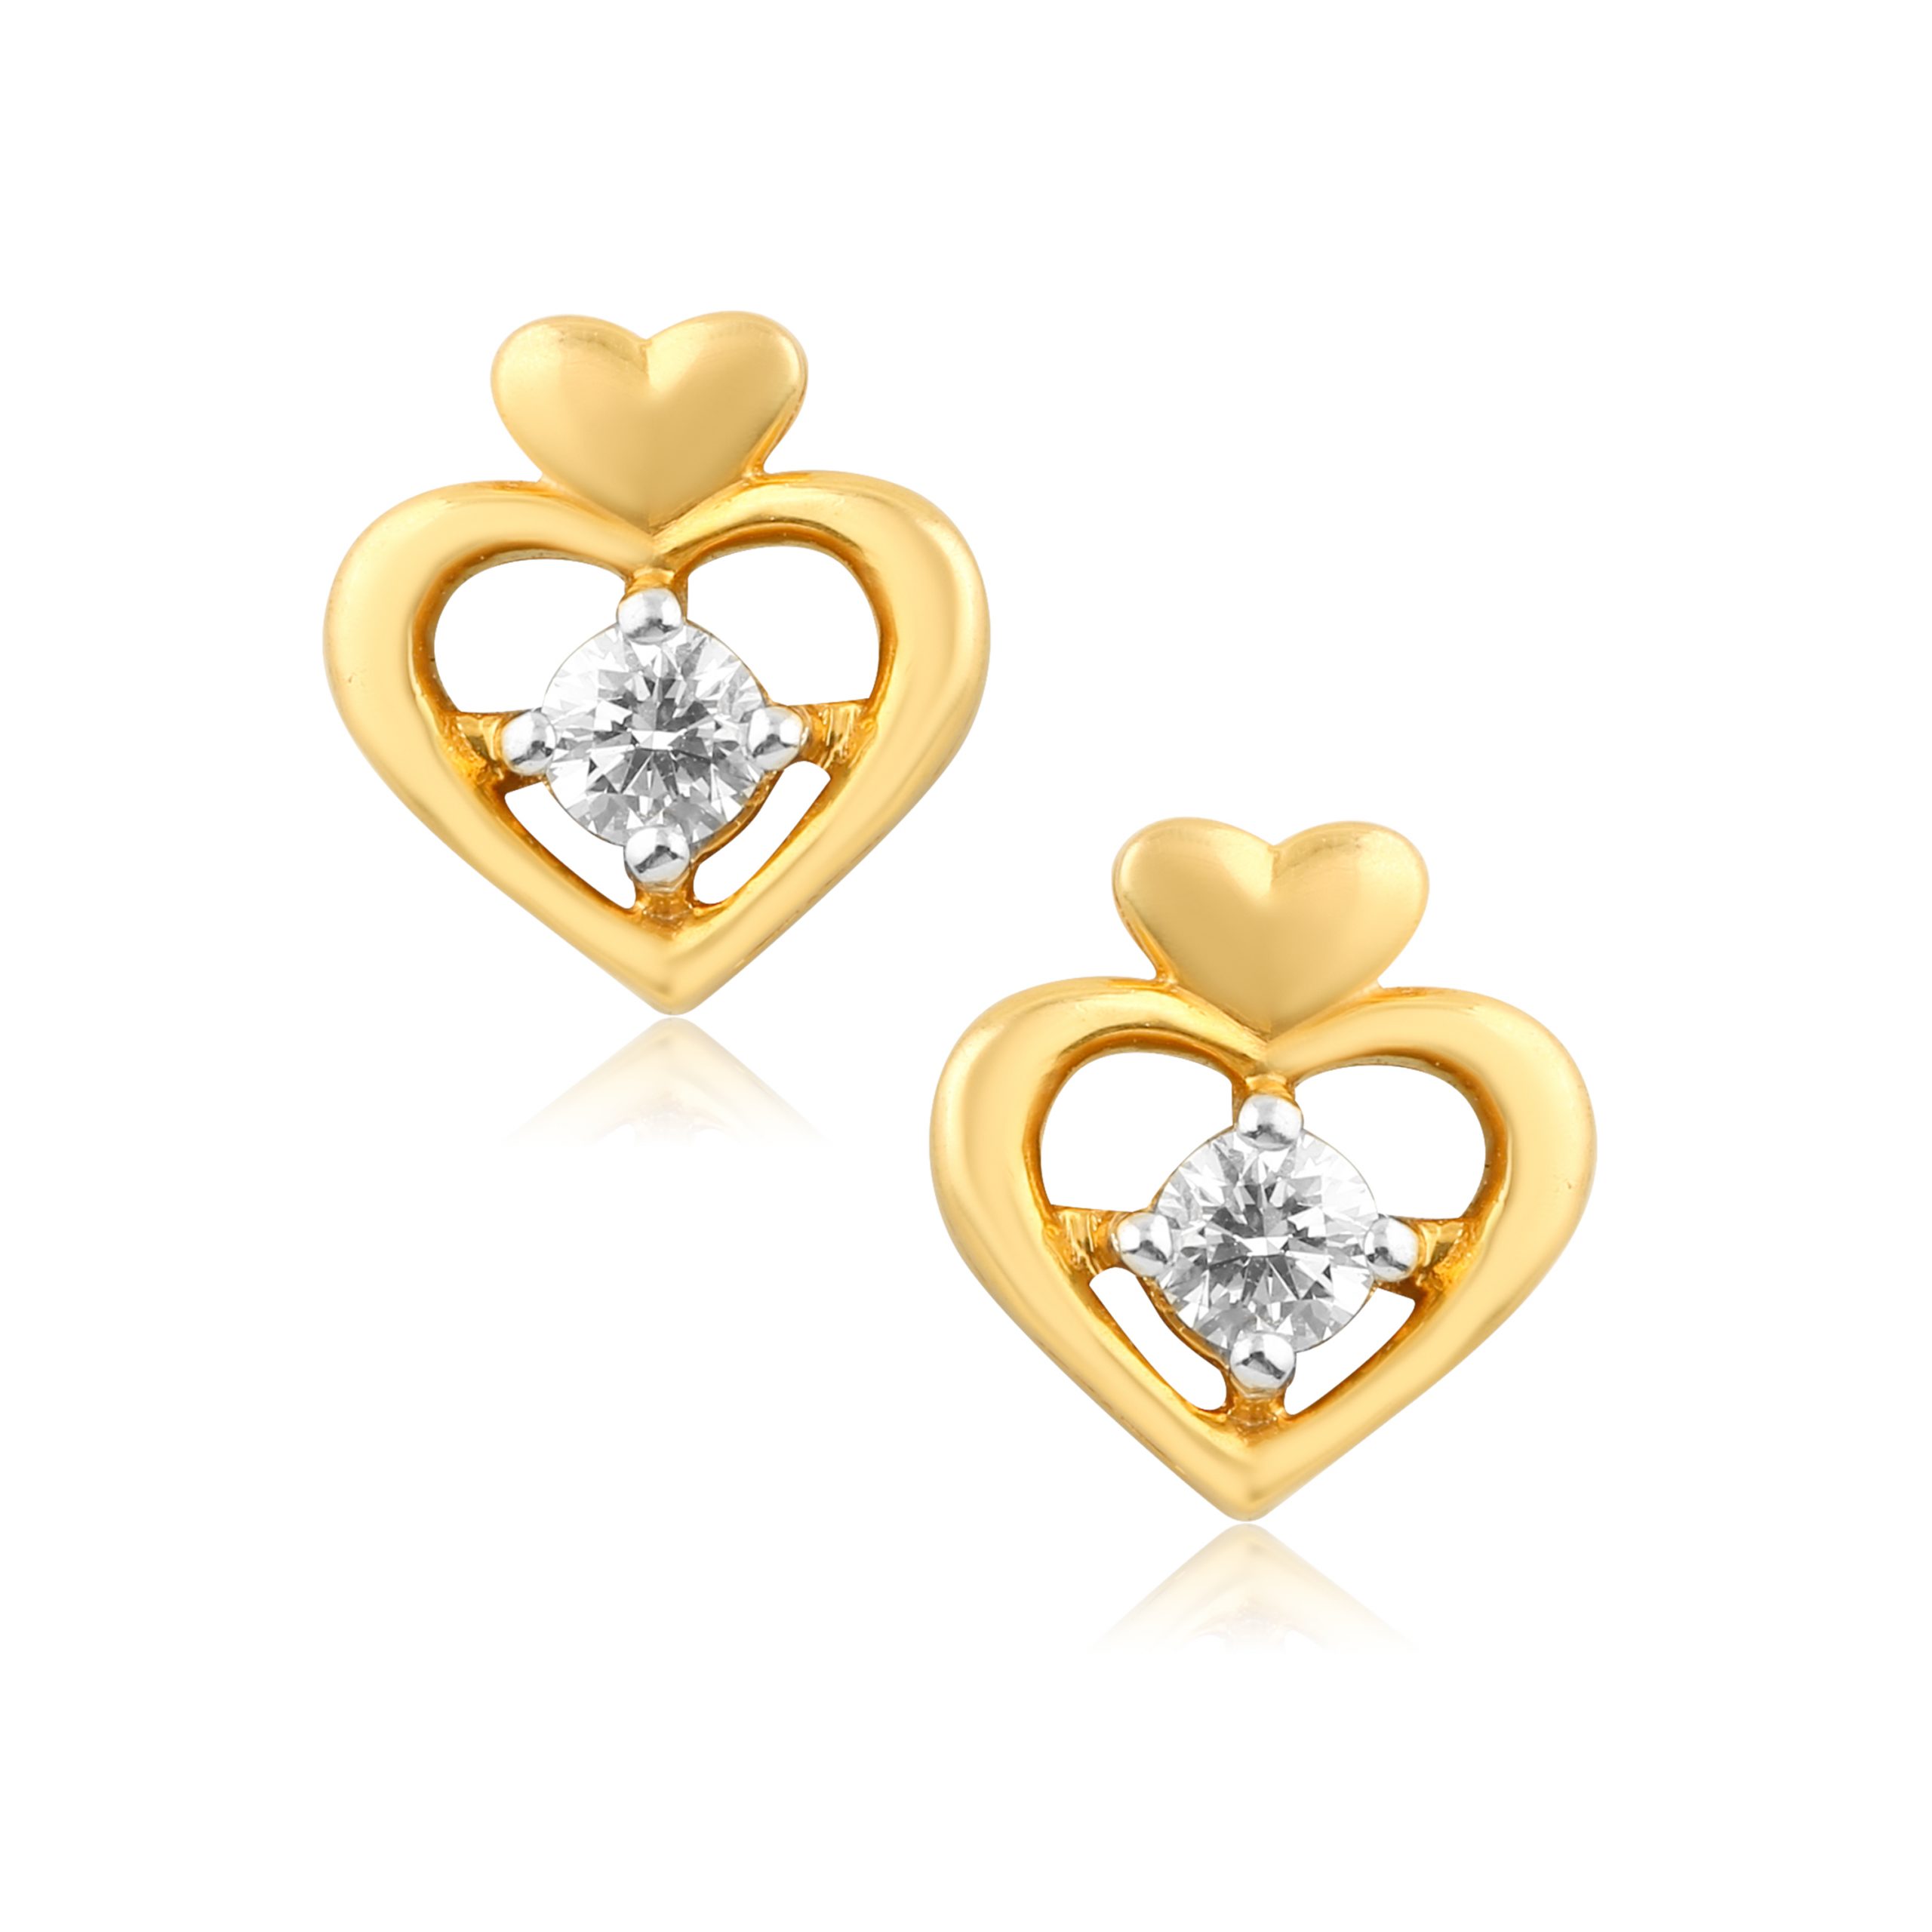 Double Heart 18 Kt Gold & Diamond Stud Earrings